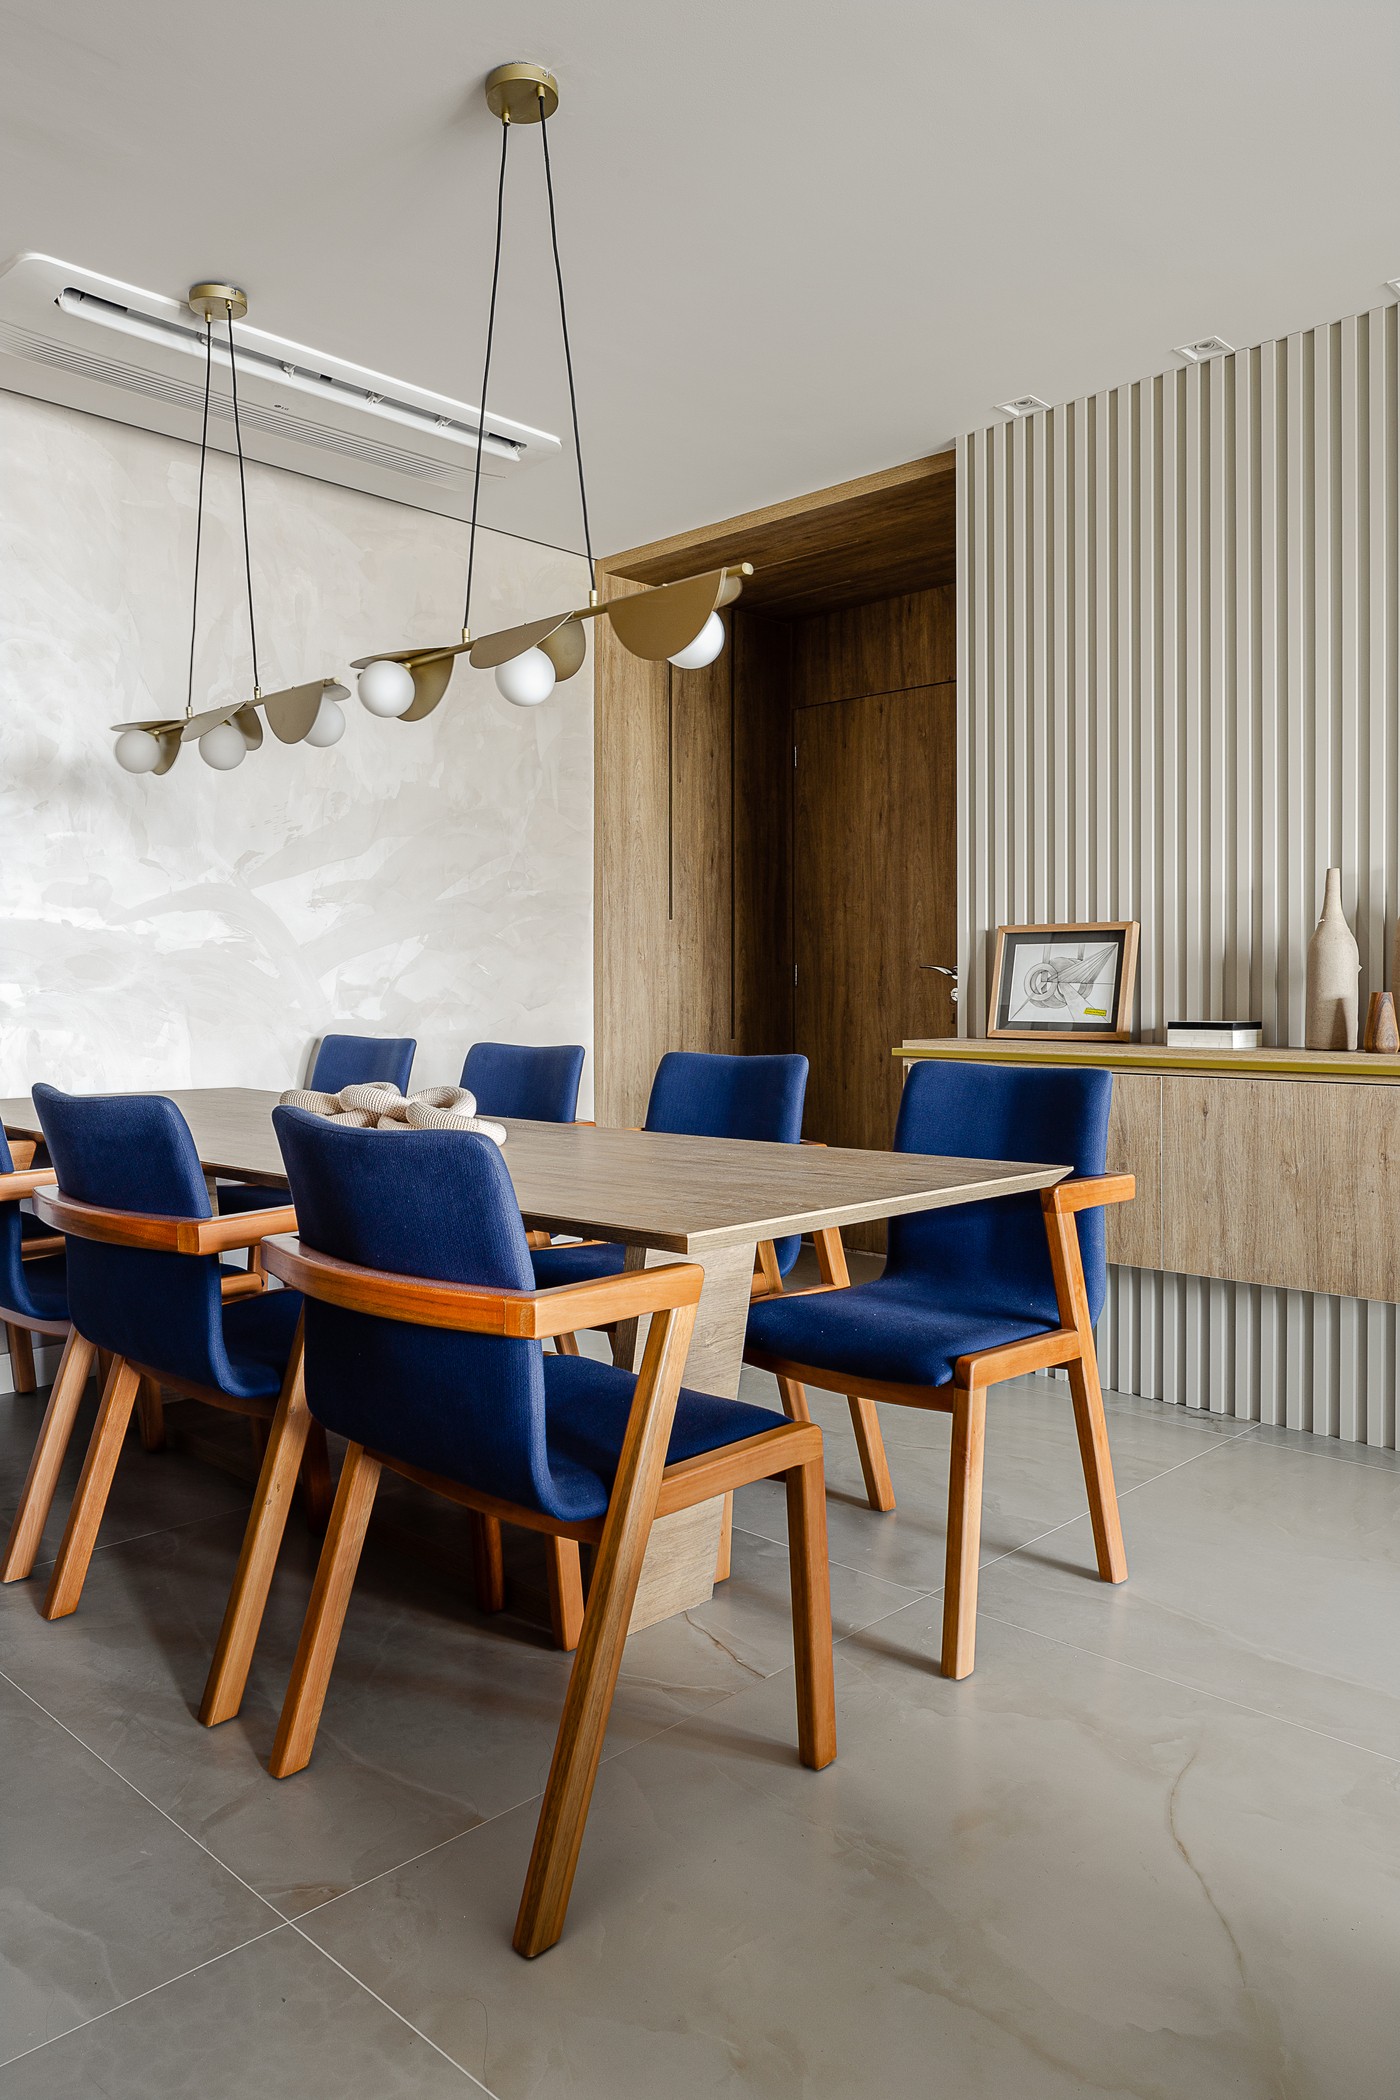 Décor do dia: sala de jantar com madeira e cadeiras azuis (Foto: Ricardo Faiani)